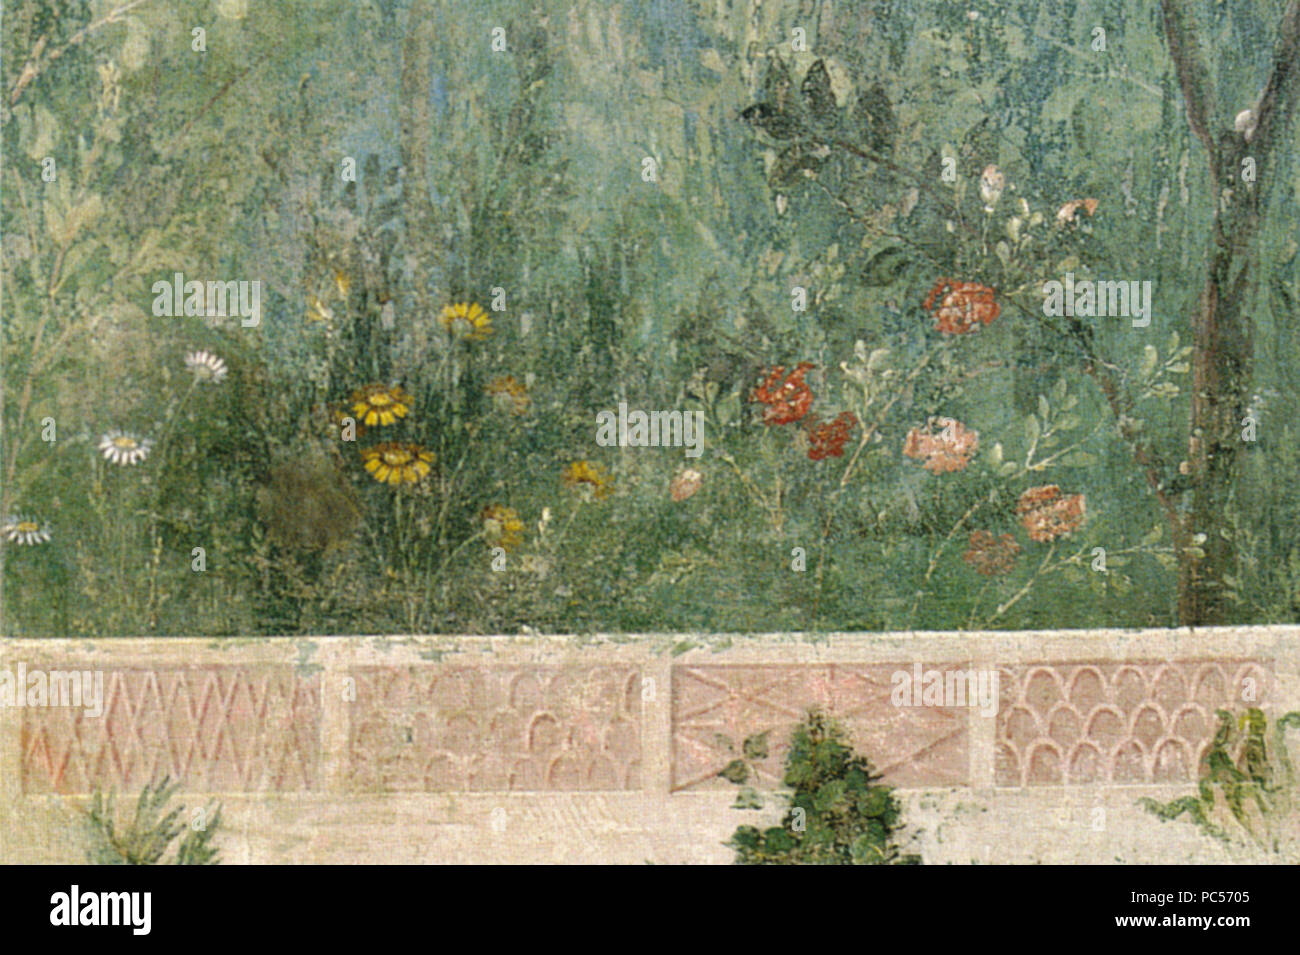 633 Villa di livia, affreschi di giardino, parete corta meridionale, fiori 01 Stock Photo